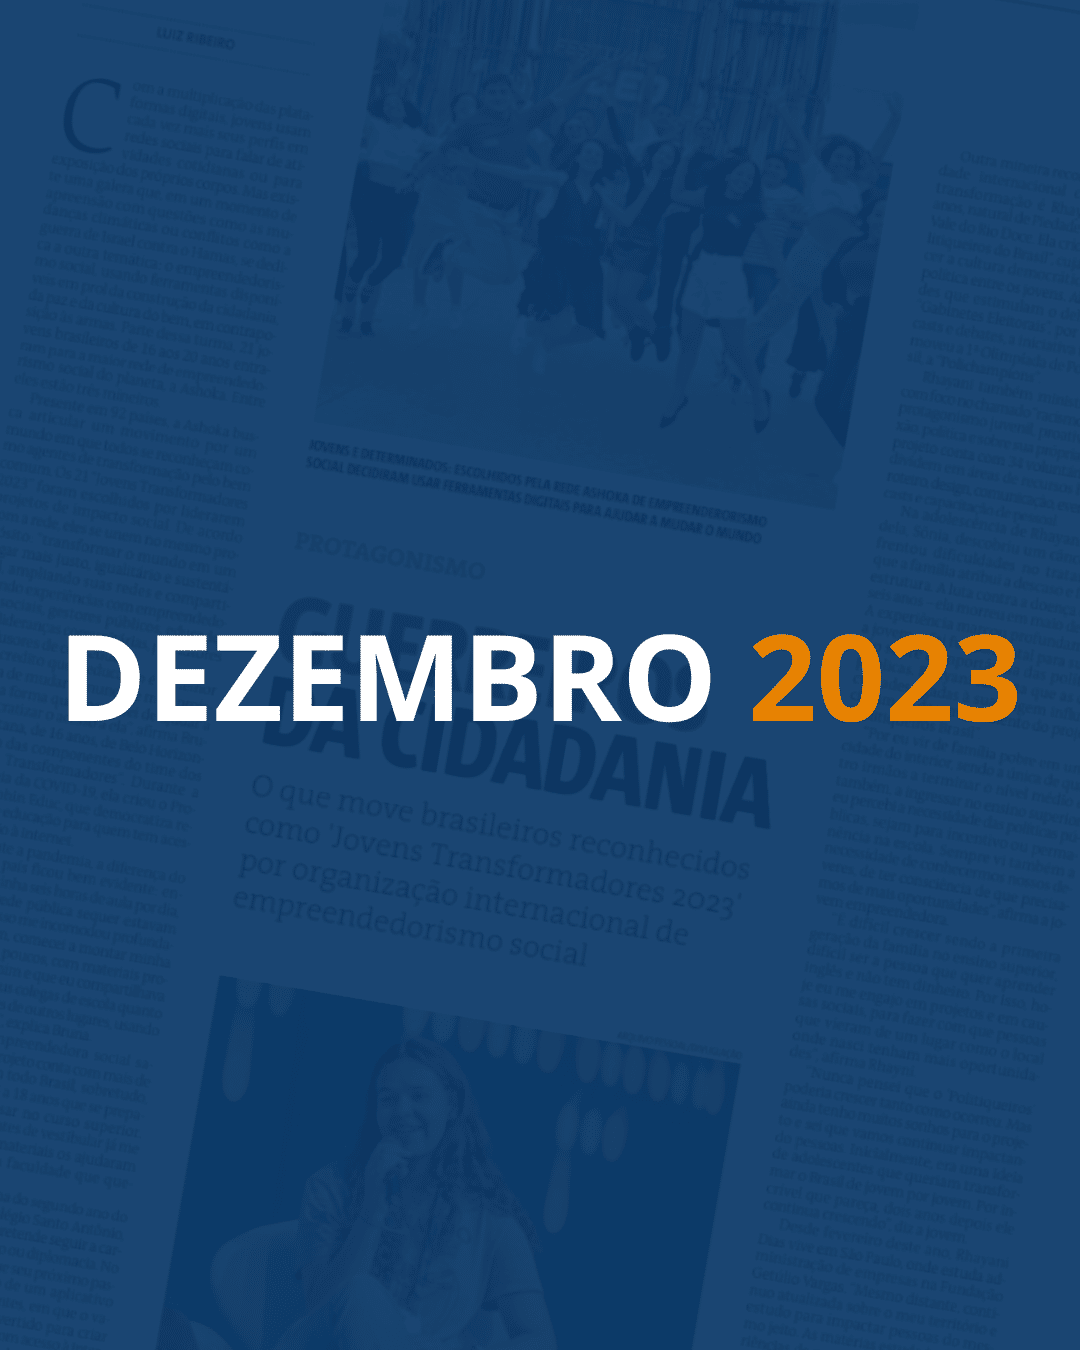 Fundo com uma página de jornal e um filtro azul escuro por cima. Em destaque, lê-se "DEZEMBRO" em branco e "2023" em laranja